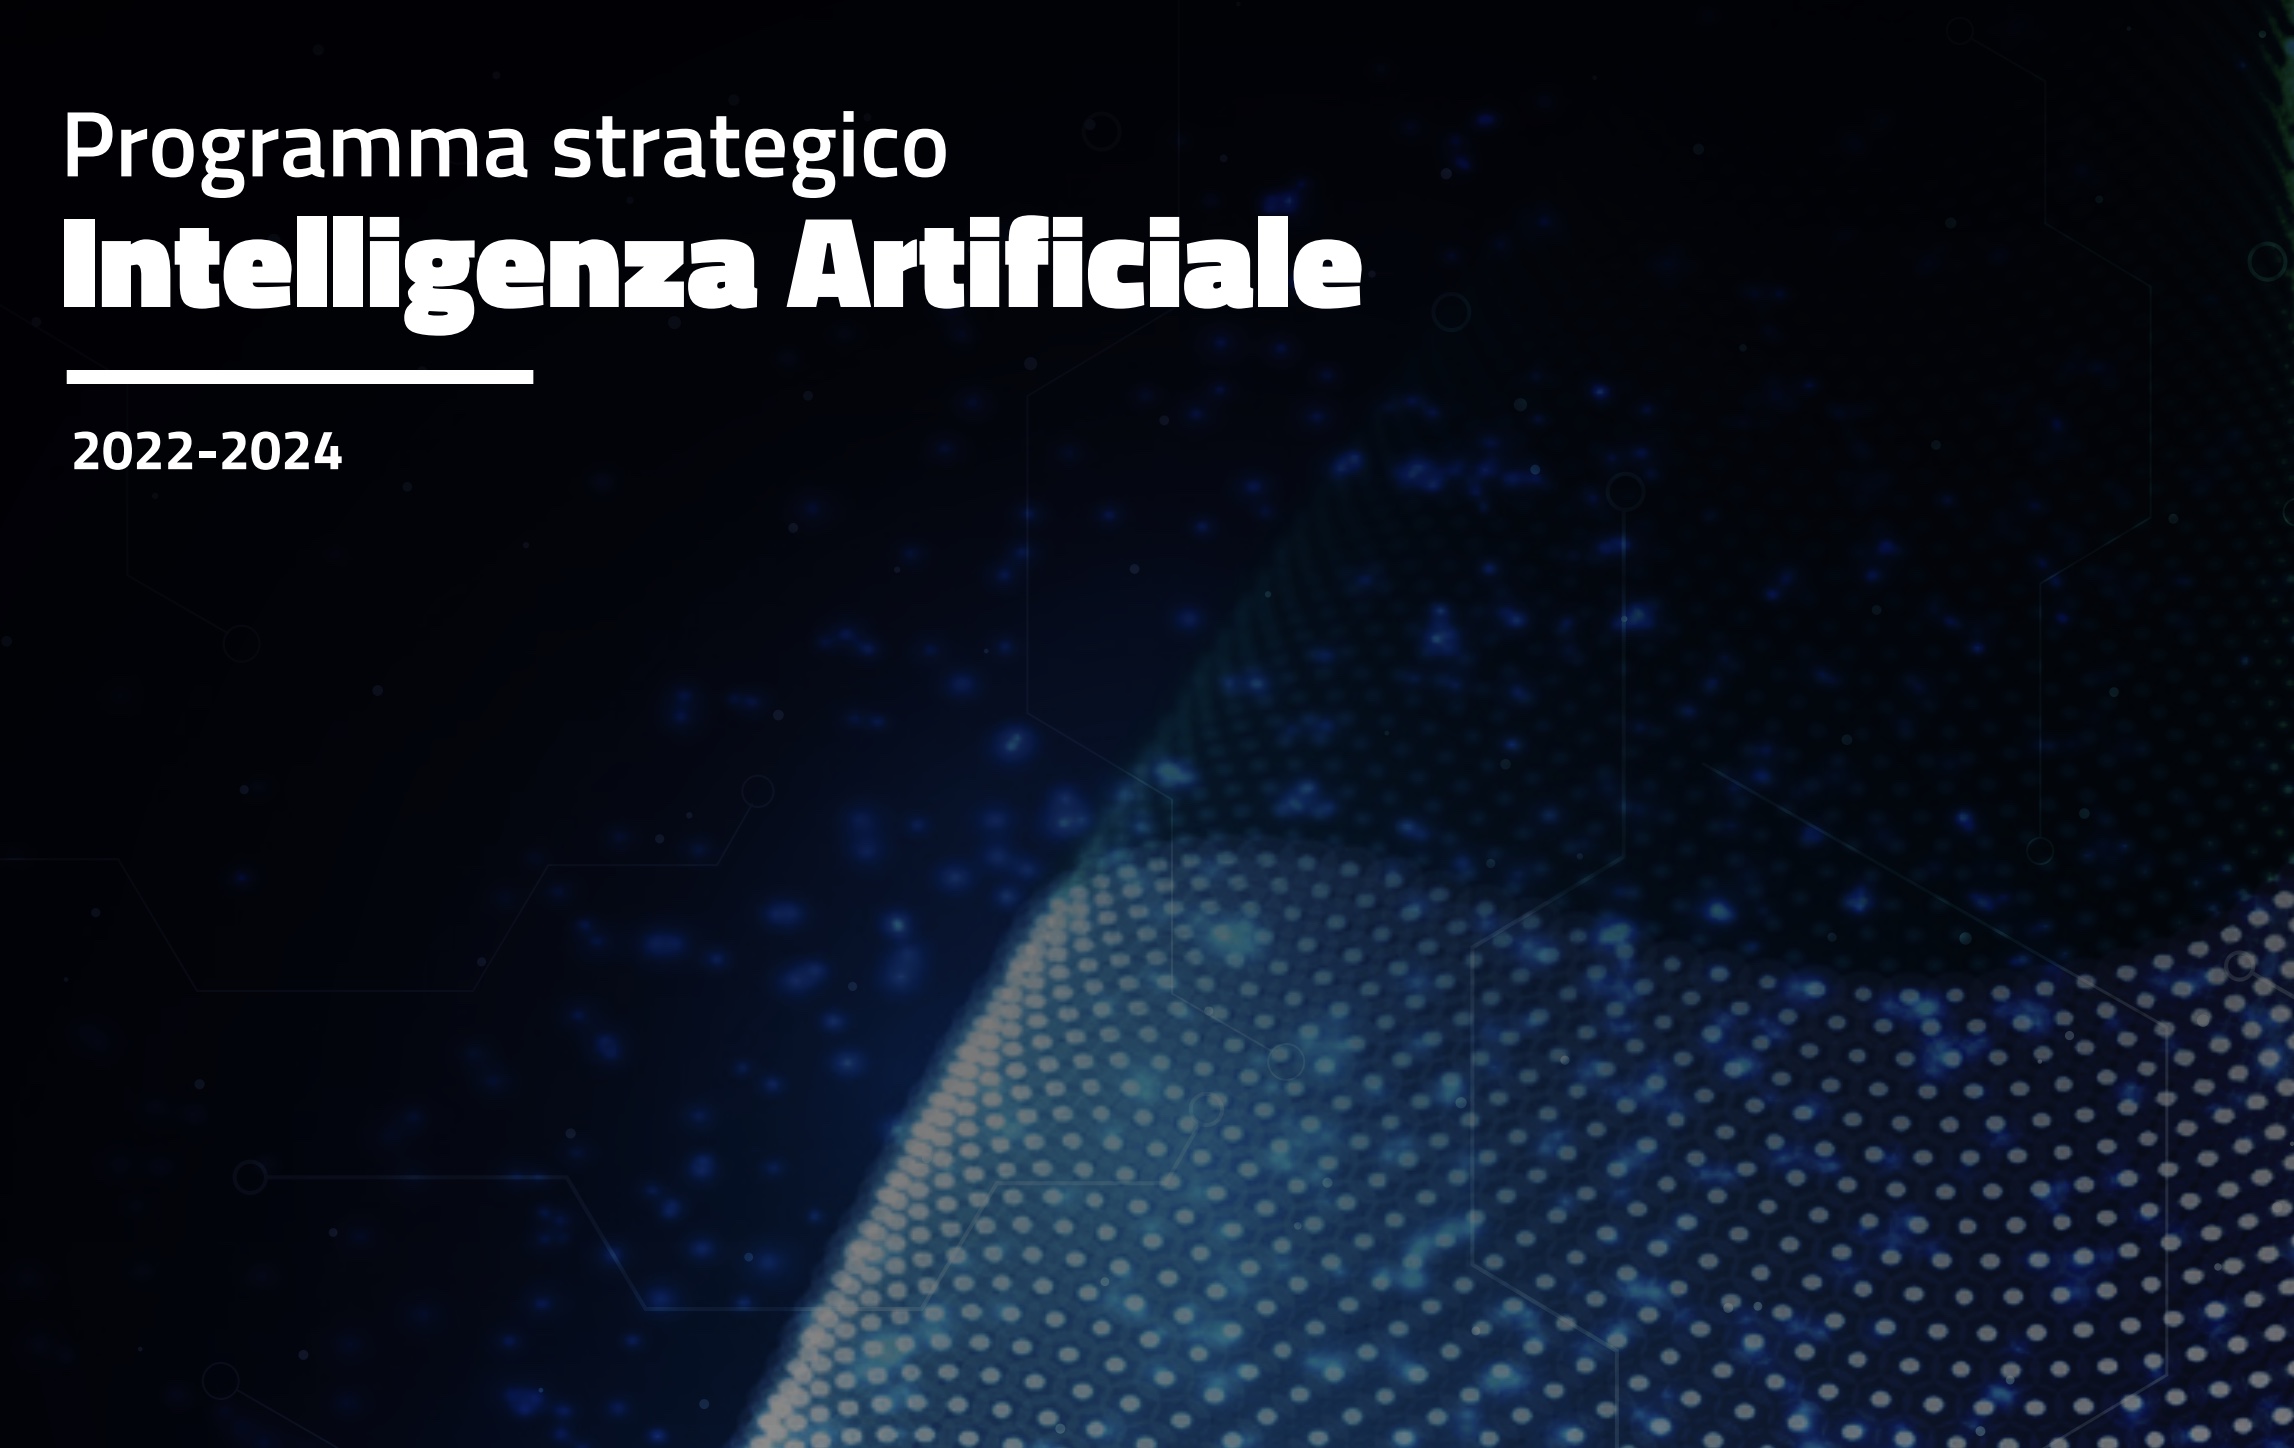 Investimenti nella ricerca, sviluppo delle competenze e focus sulle applicazioni (manifattura in primis): l'Italia vara la sua Strategia sull'Intelligenza Artificiale